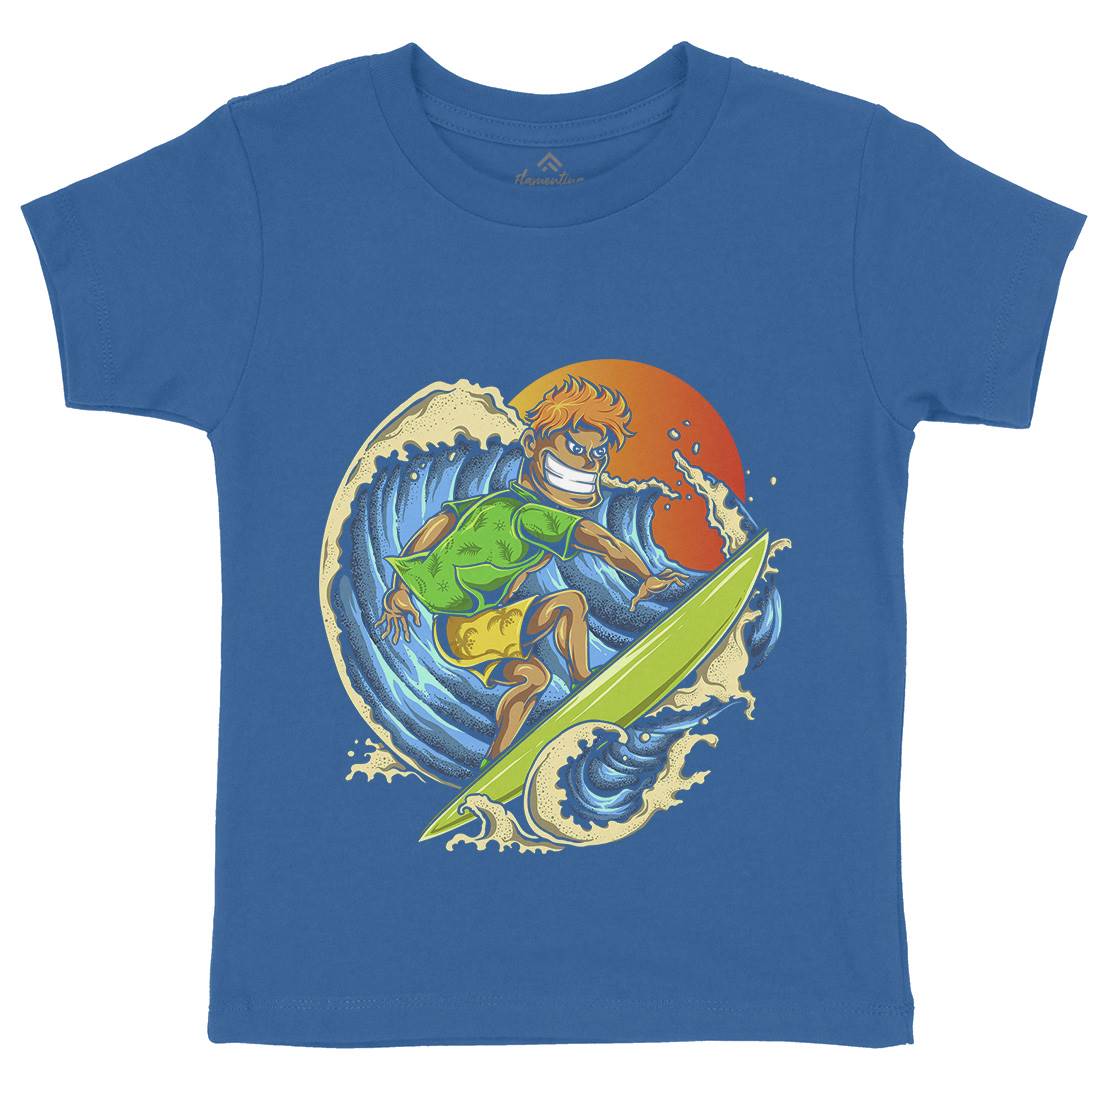 Pro Surfer Kids Crew Neck T-Shirt Surf A454